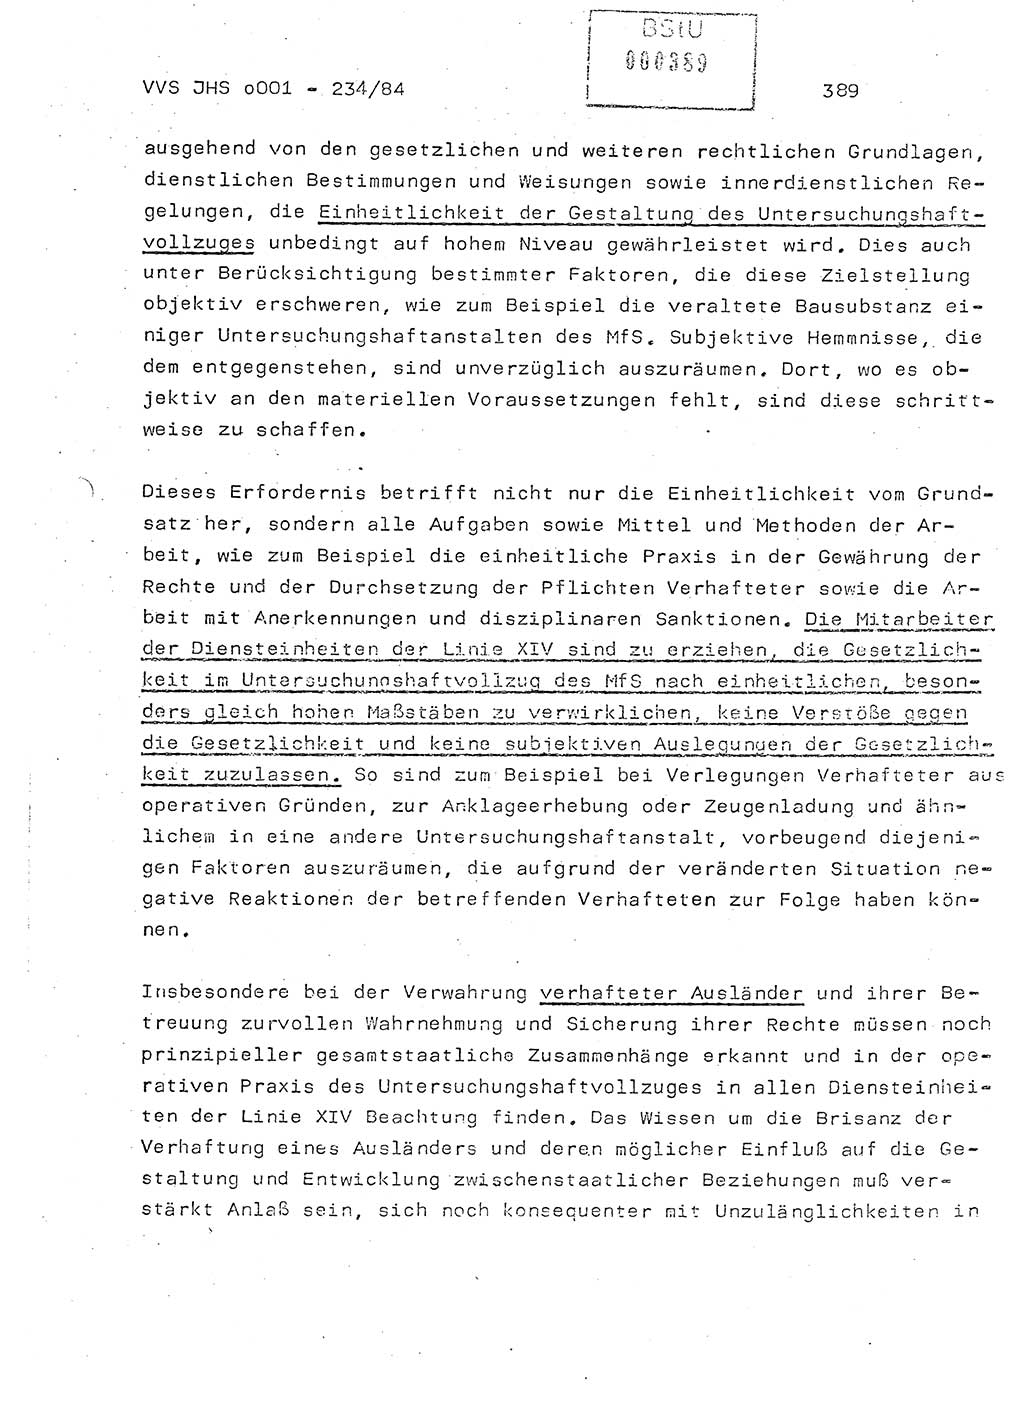 Dissertation Oberst Siegfried Rataizick (Abt. ⅩⅣ), Oberstleutnant Volkmar Heinz (Abt. ⅩⅣ), Oberstleutnant Werner Stein (HA Ⅸ), Hauptmann Heinz Conrad (JHS), Ministerium für Staatssicherheit (MfS) [Deutsche Demokratische Republik (DDR)], Juristische Hochschule (JHS), Vertrauliche Verschlußsache (VVS) o001-234/84, Potsdam 1984, Seite 389 (Diss. MfS DDR JHS VVS o001-234/84 1984, S. 389)